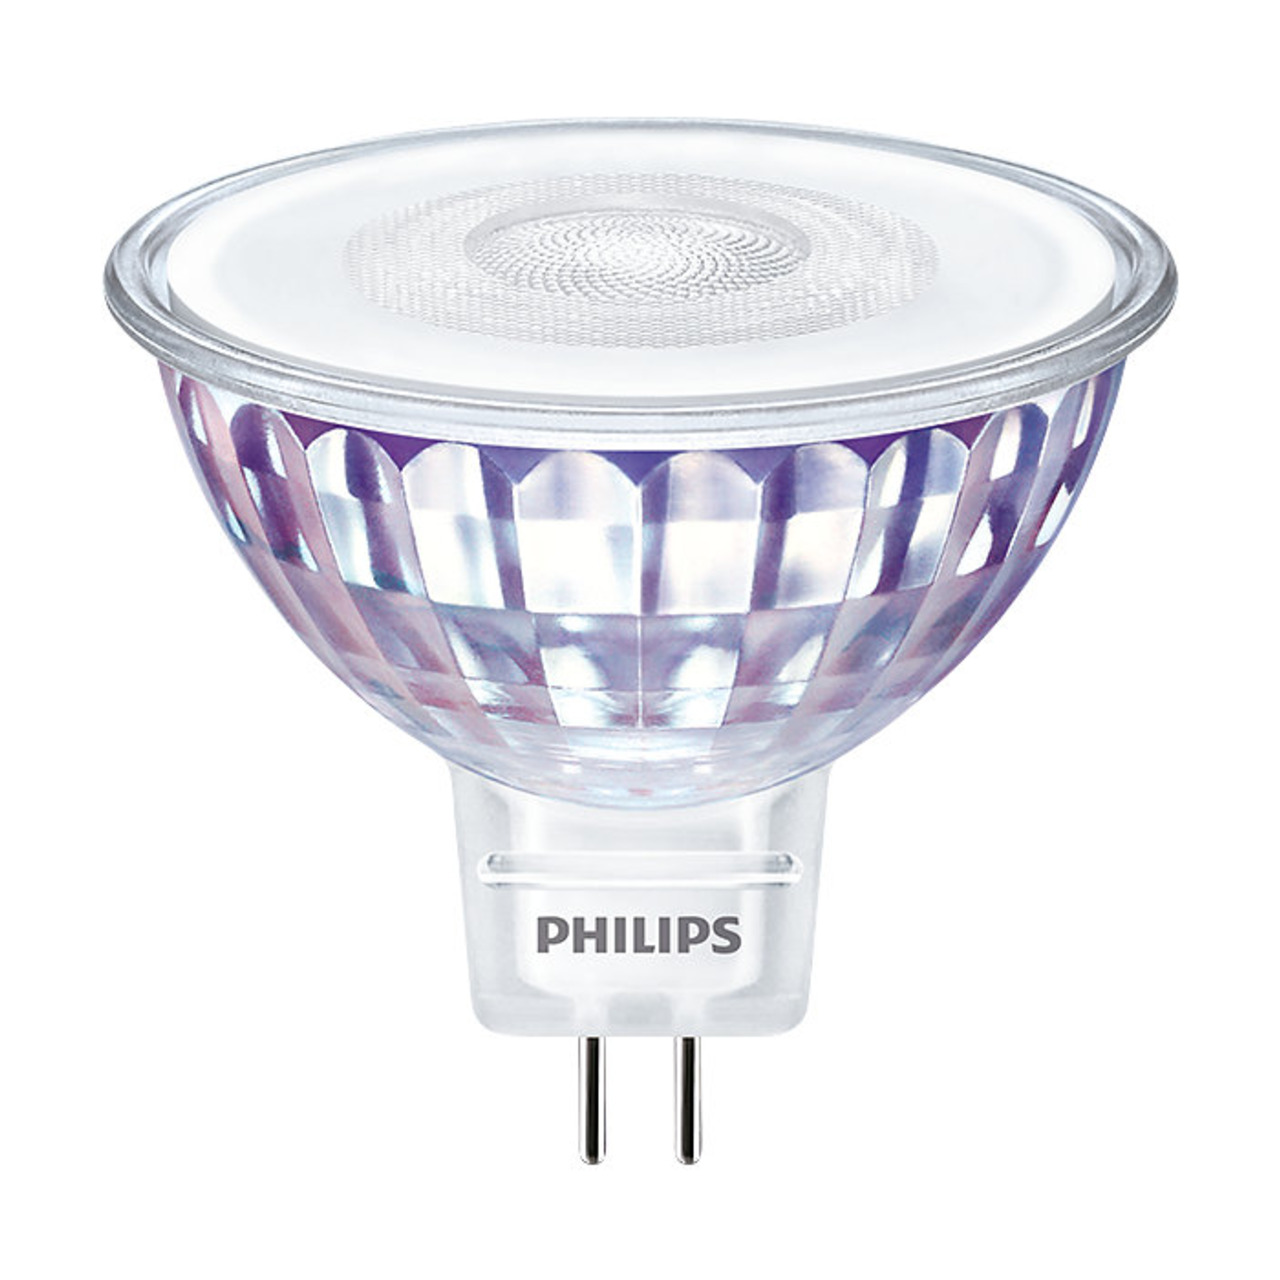 Philips 7-5-W-GU5-3-LED-Lampe Master LEDspot Value- MR16- 660 lm- neutralweiss (4000 K)- 60- dimmbar unter Beleuchtung